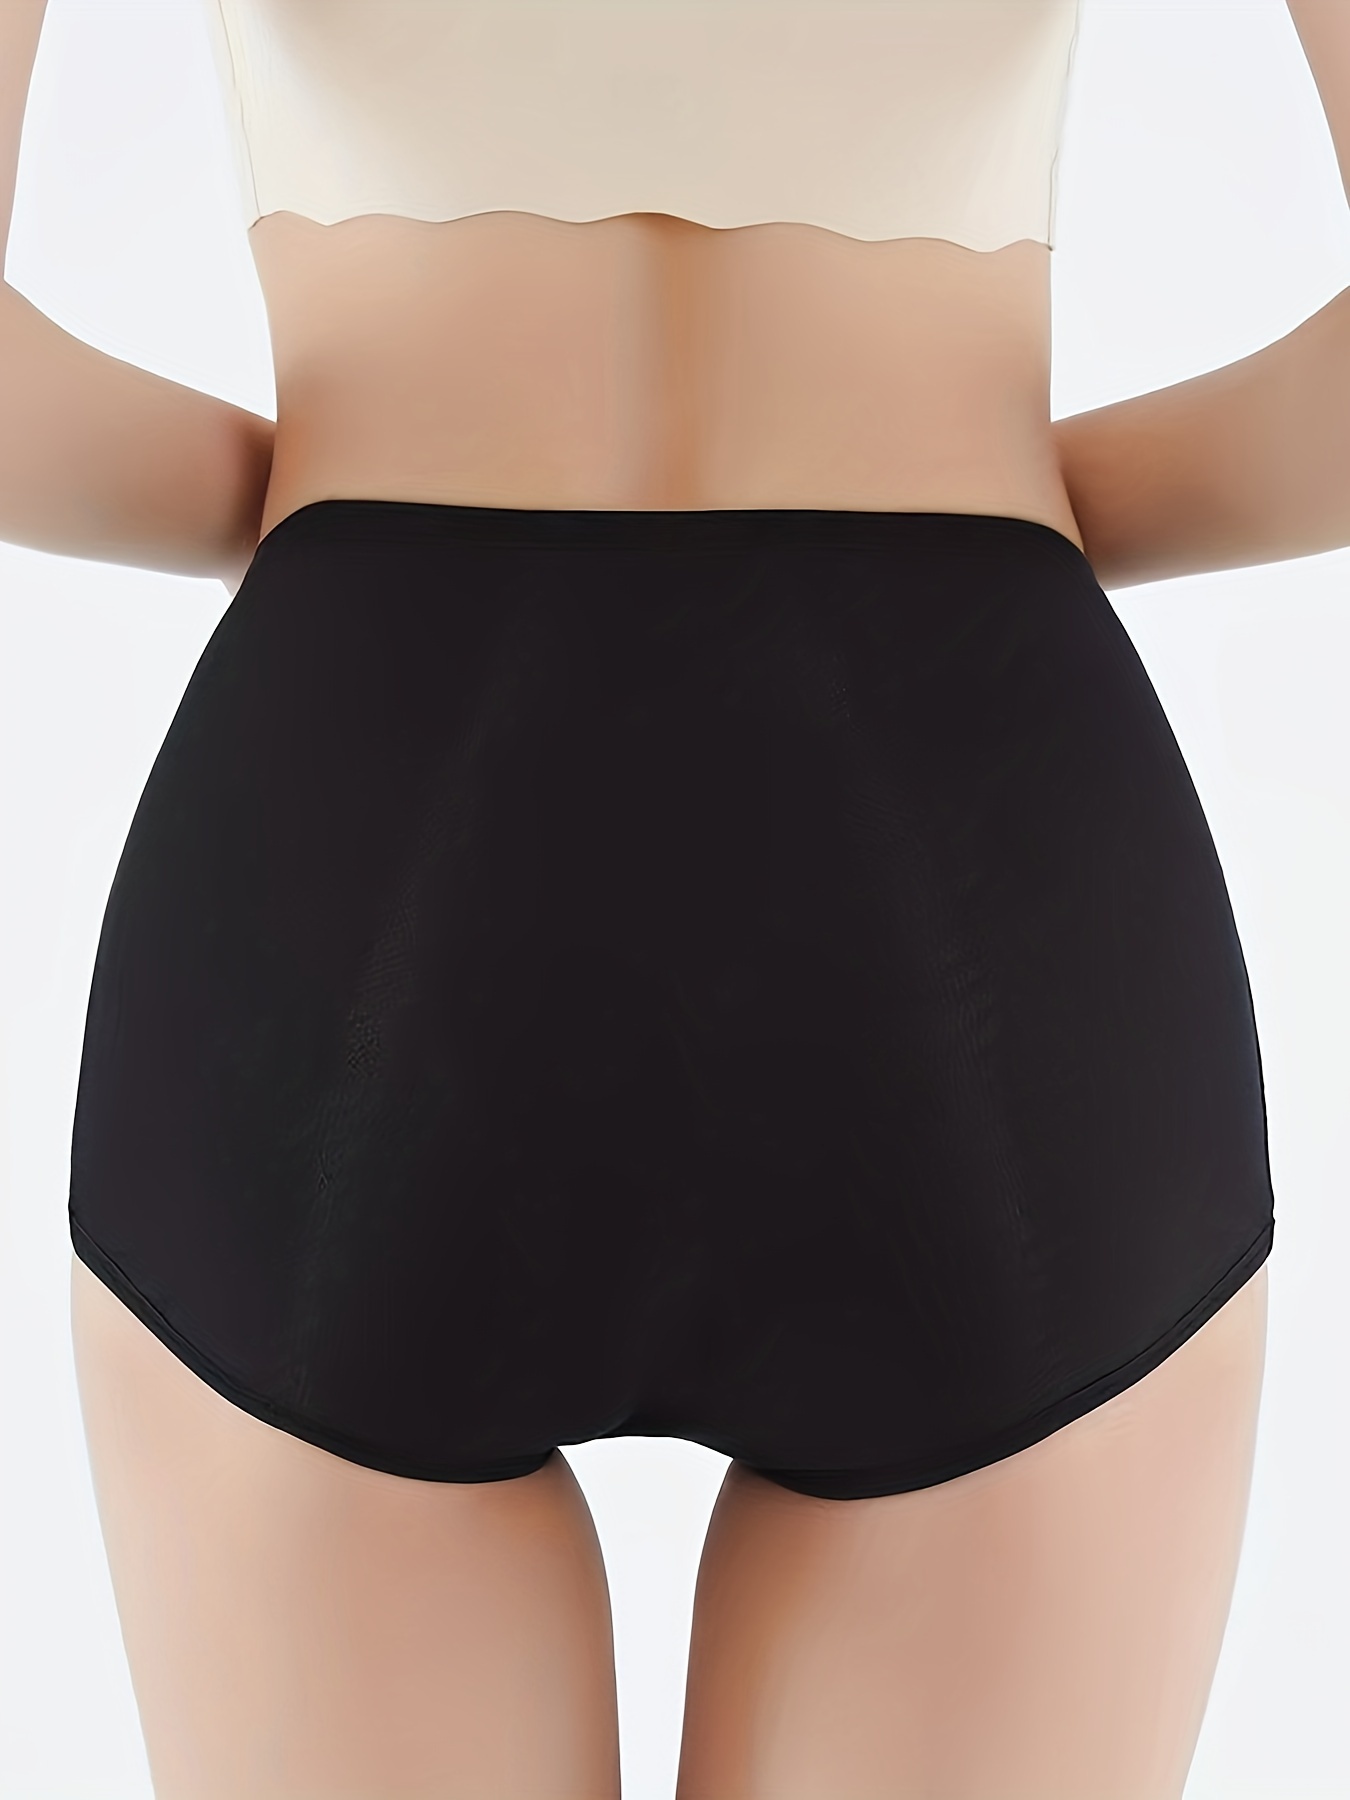 High Waisted Leak Proof Panties Underwear For Women Leak Proof